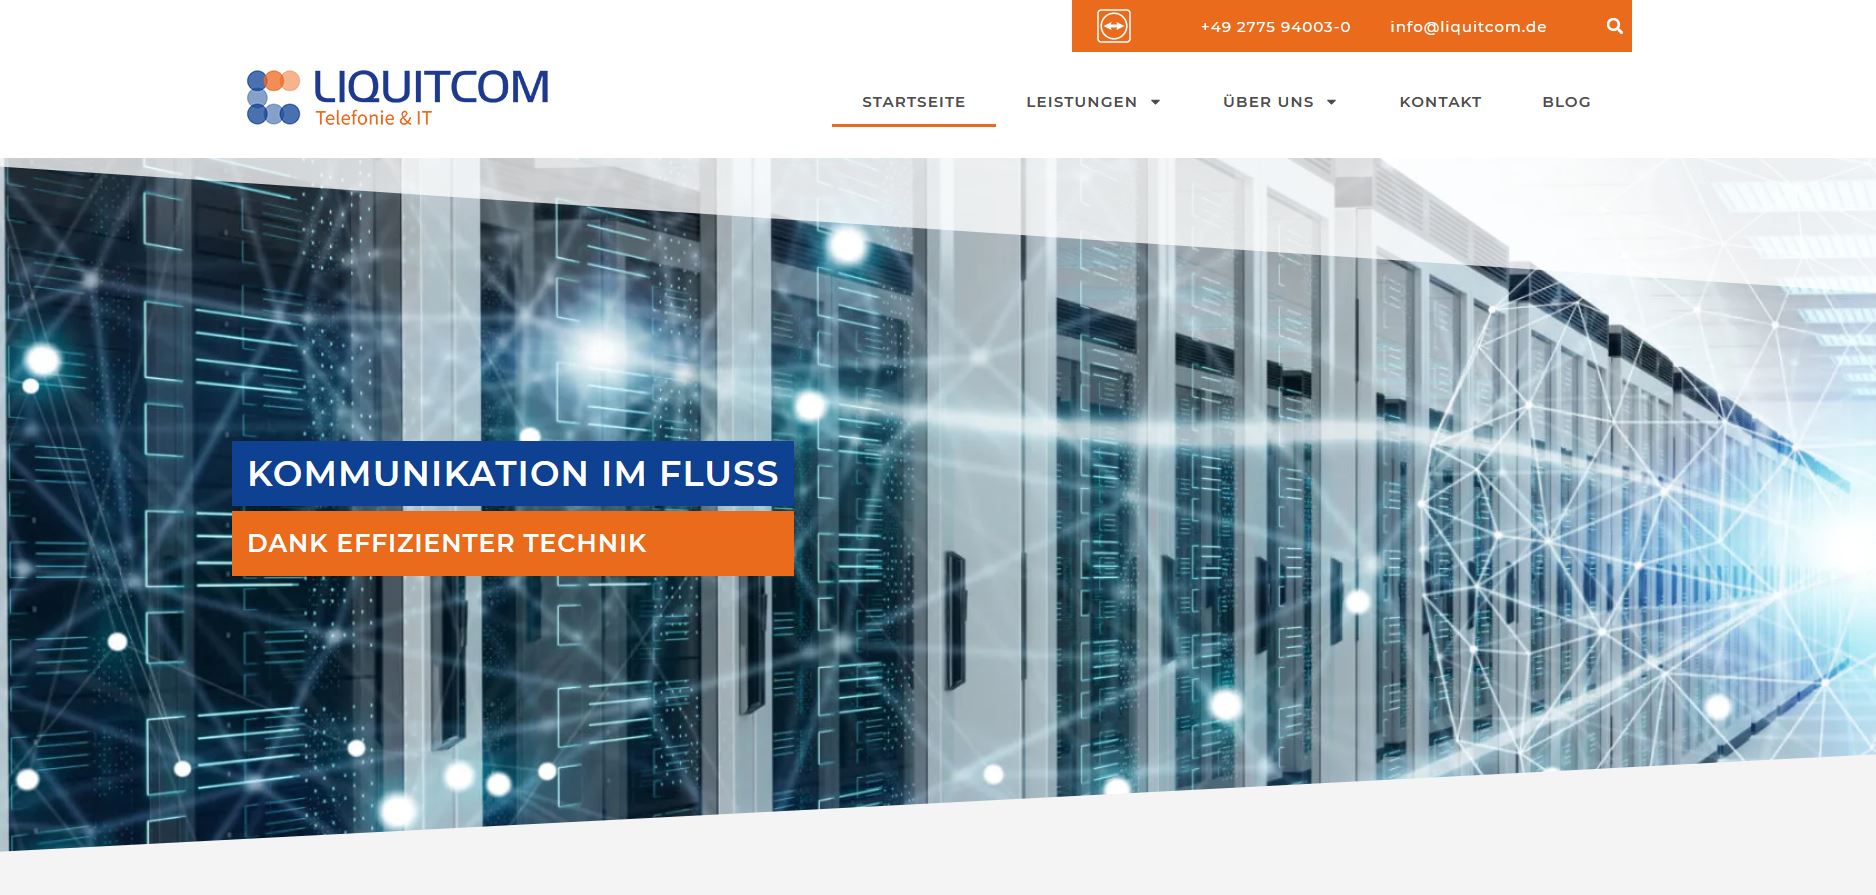 Liquitcom – Die perfekte Lösung für Telefonie, IT-Sicherheit, IT-Lösungen und Netzwerk